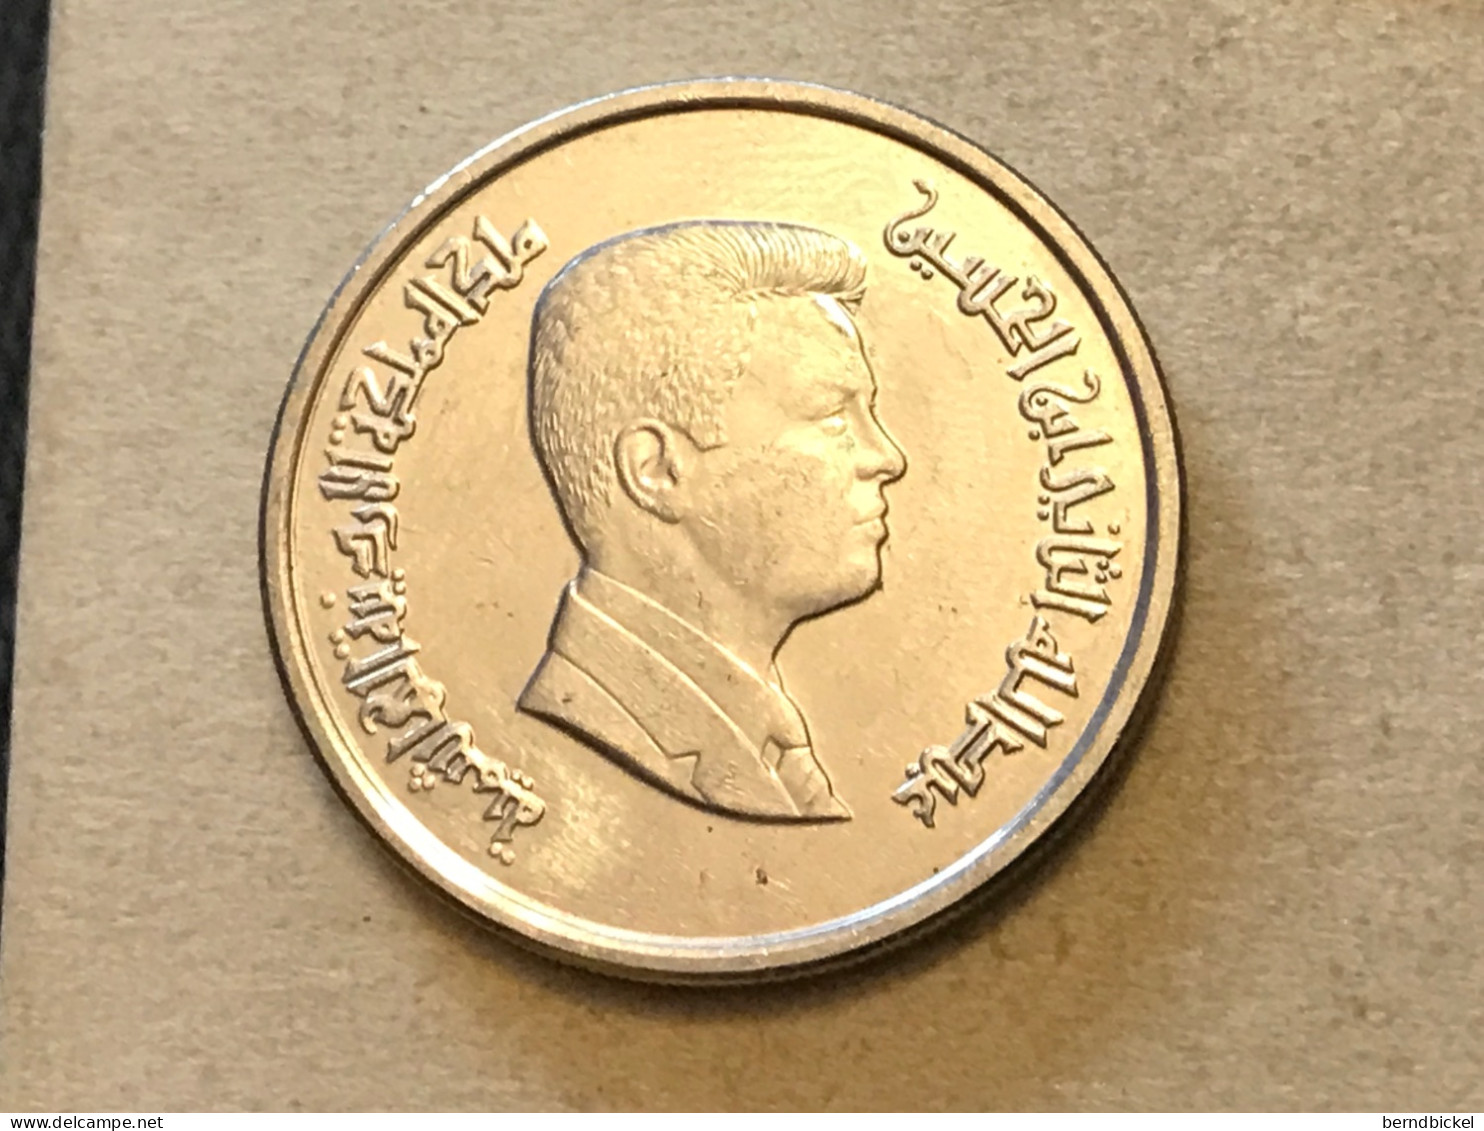 Münze Münzen Umlaufmünze Jordanien 10 Piaster 2016 - Jordania